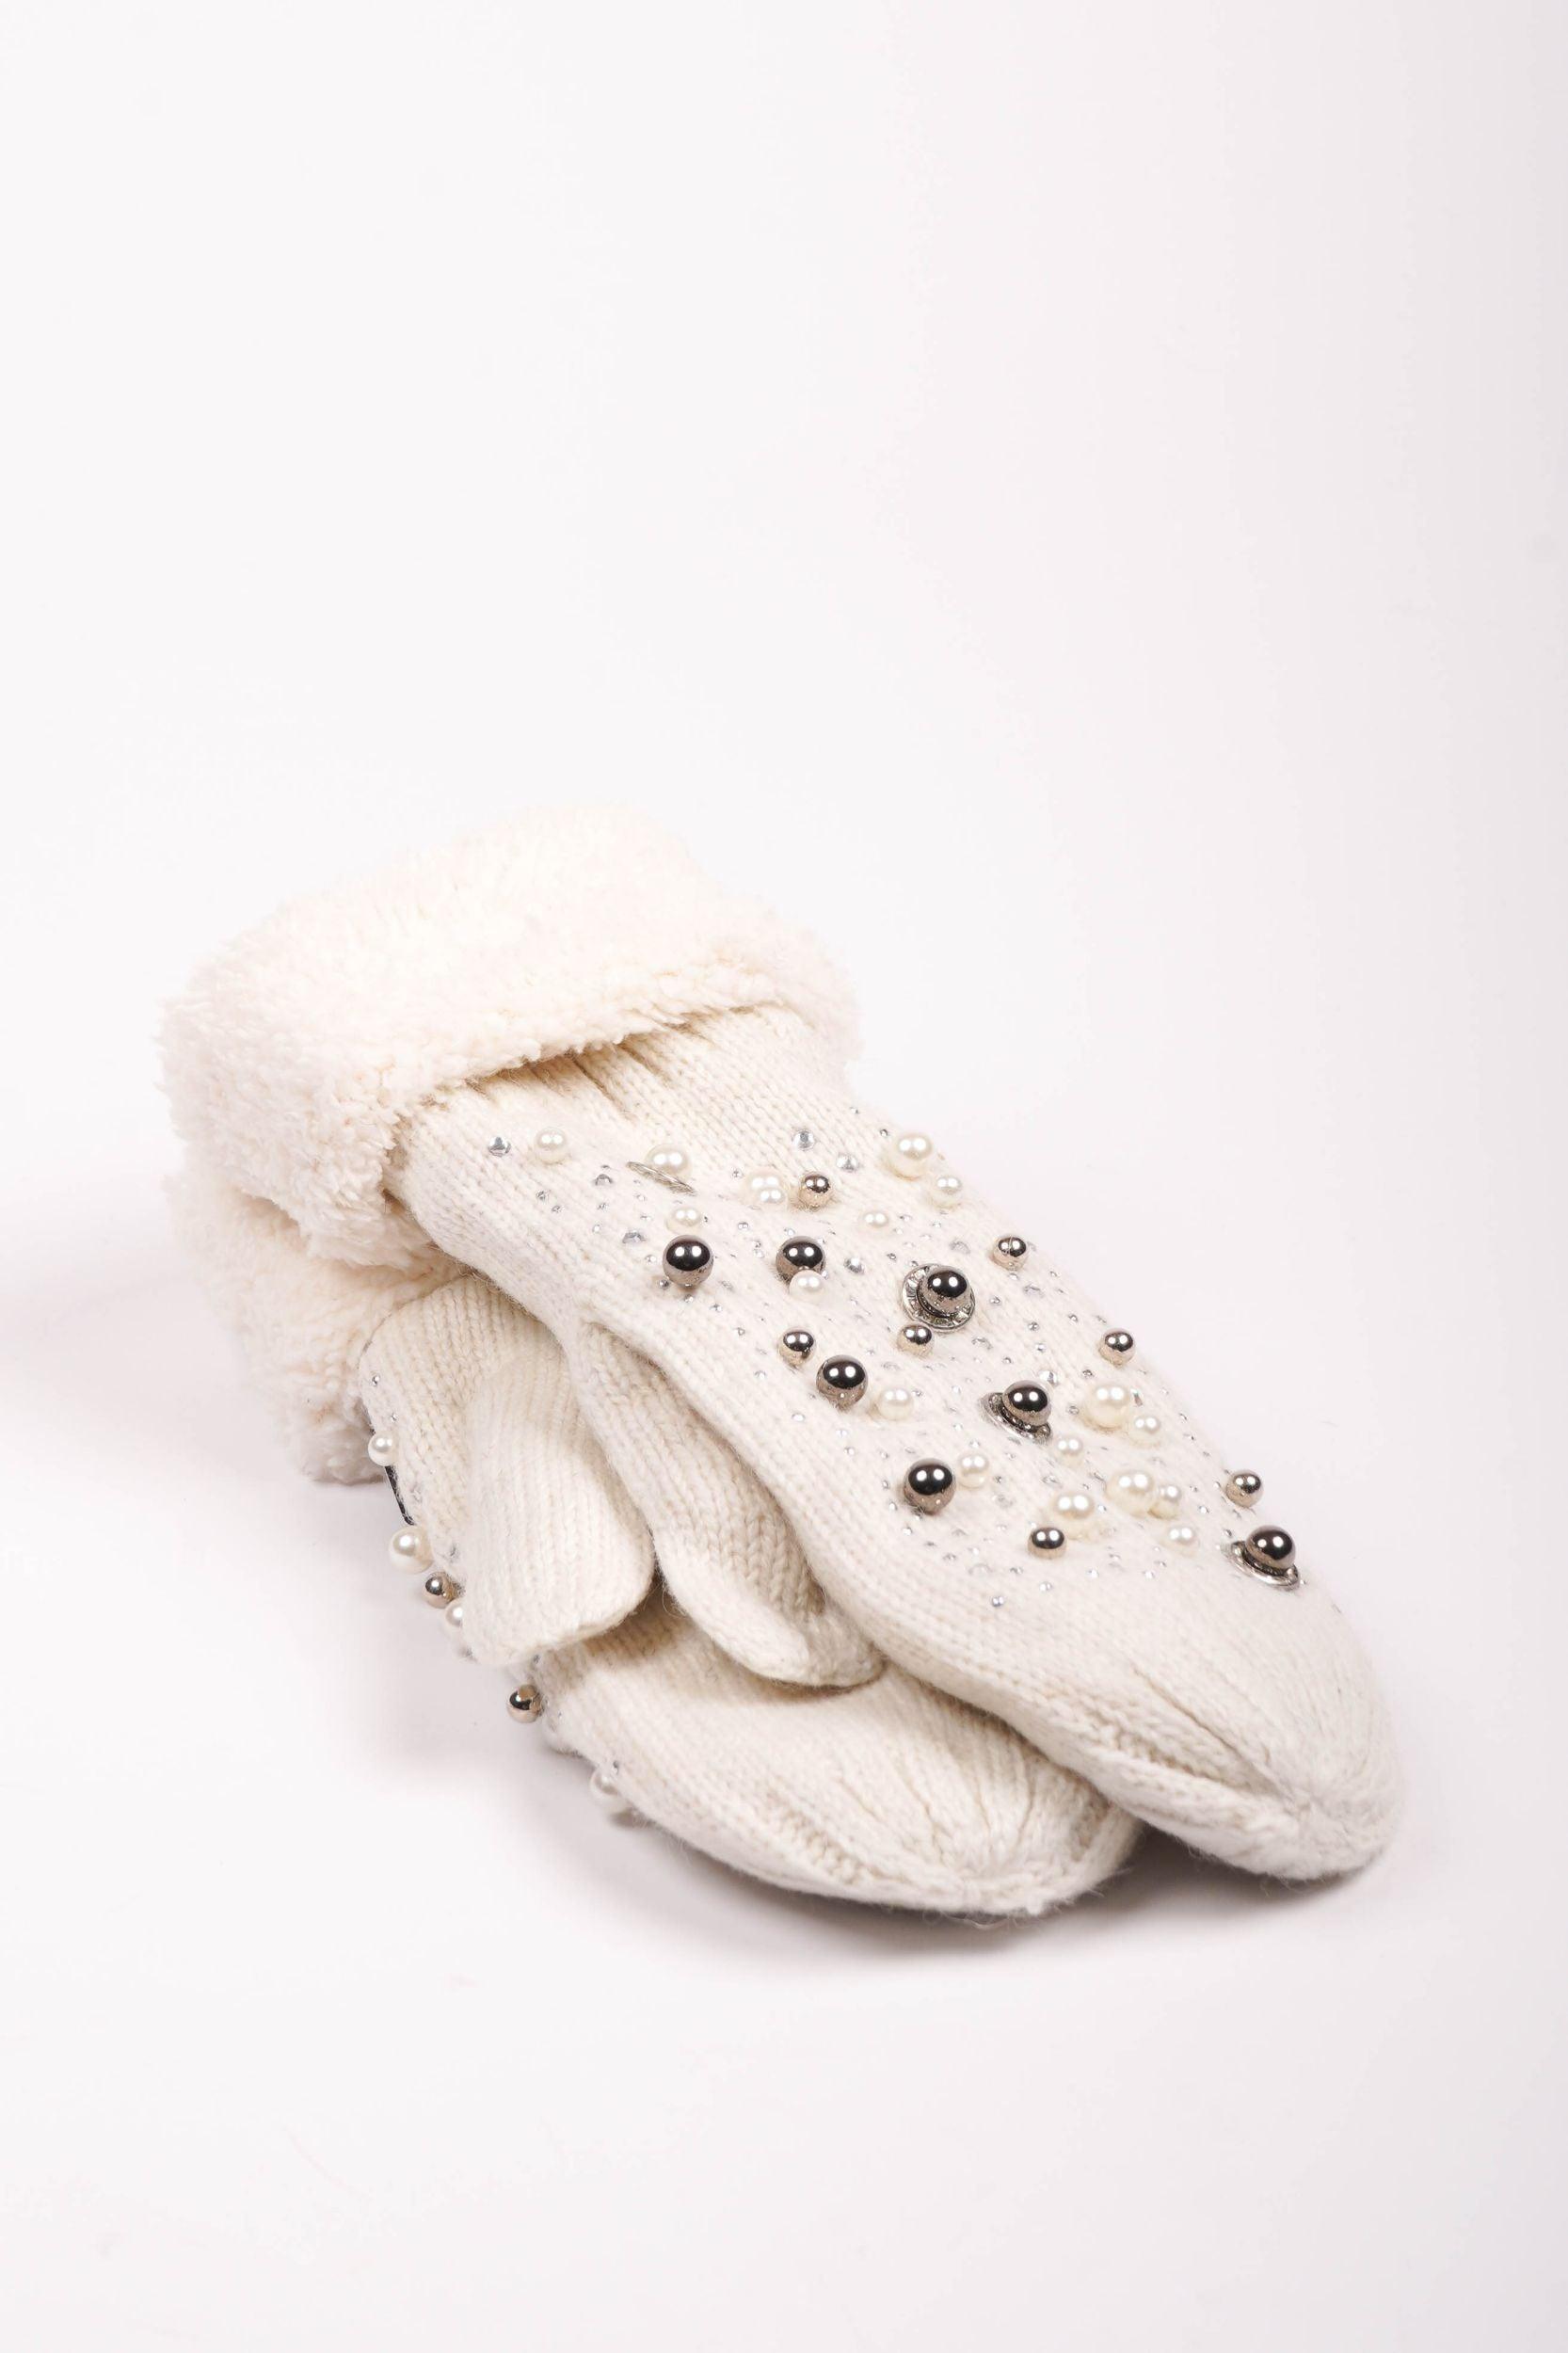 Handschuhe mit Perlen - La Strada